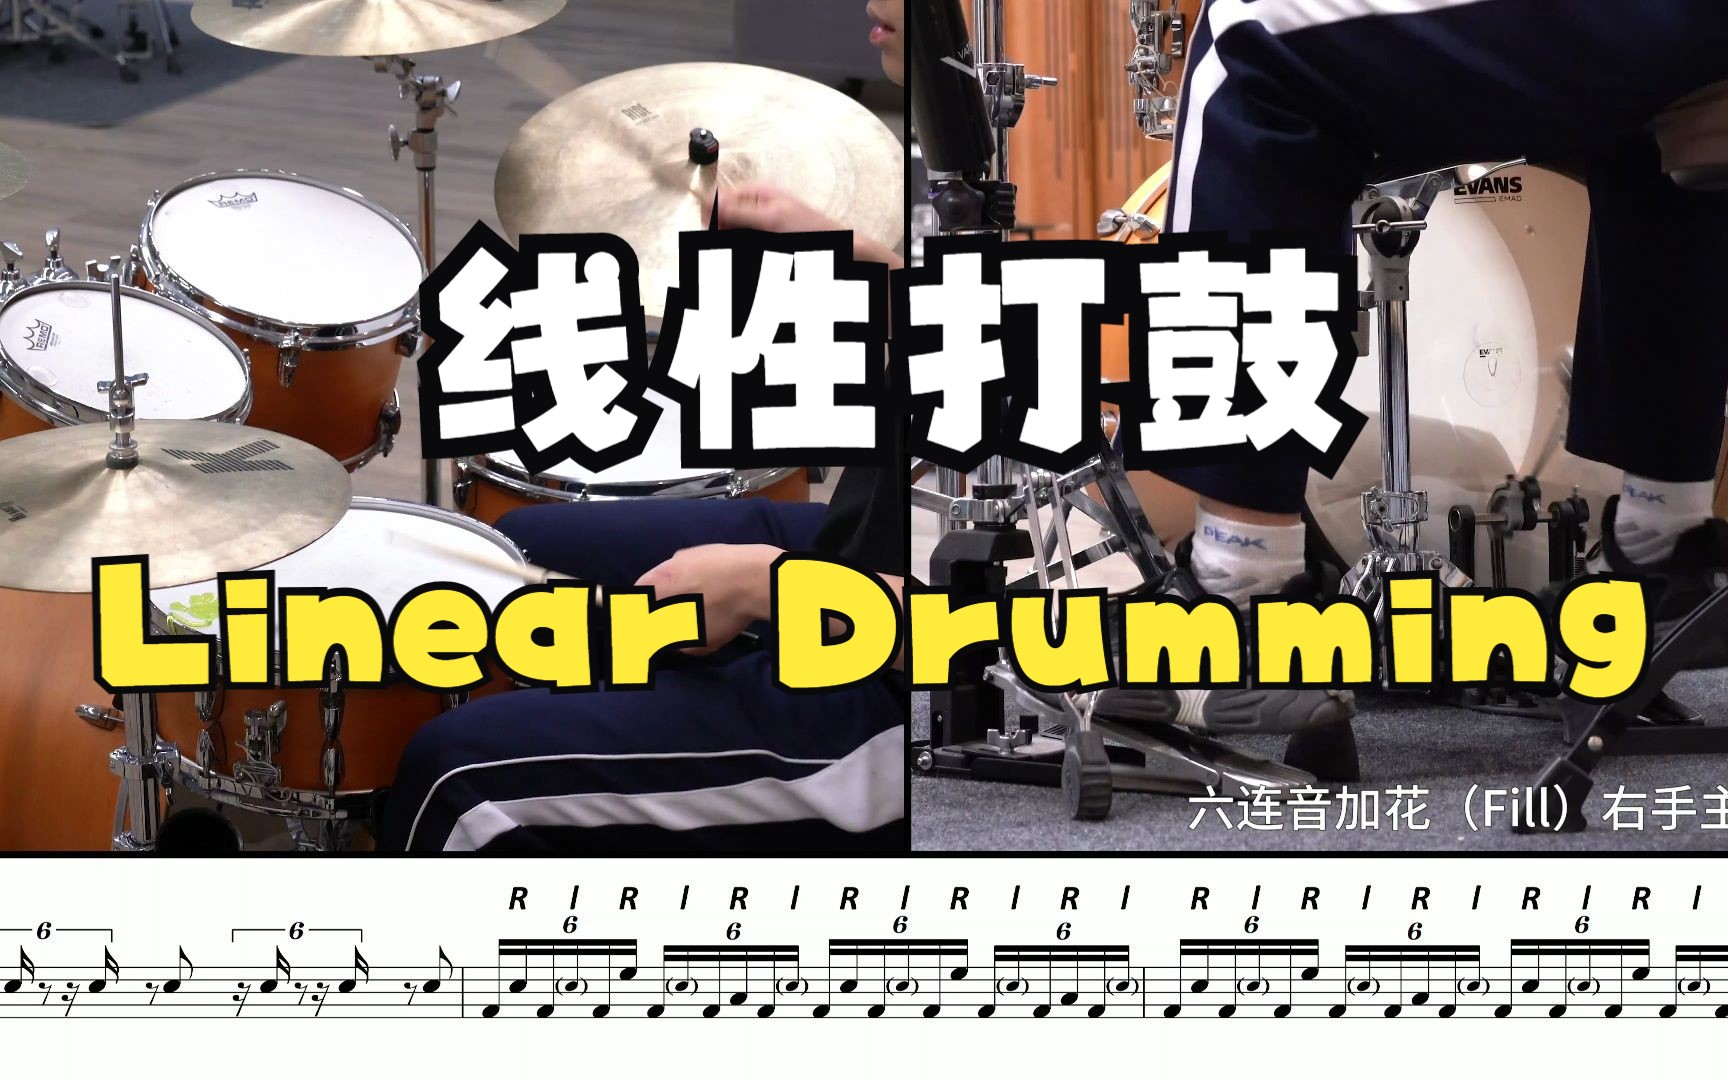 线性打鼓的无限可能，2分35秒放大招！国内首套Linear Drumming教程